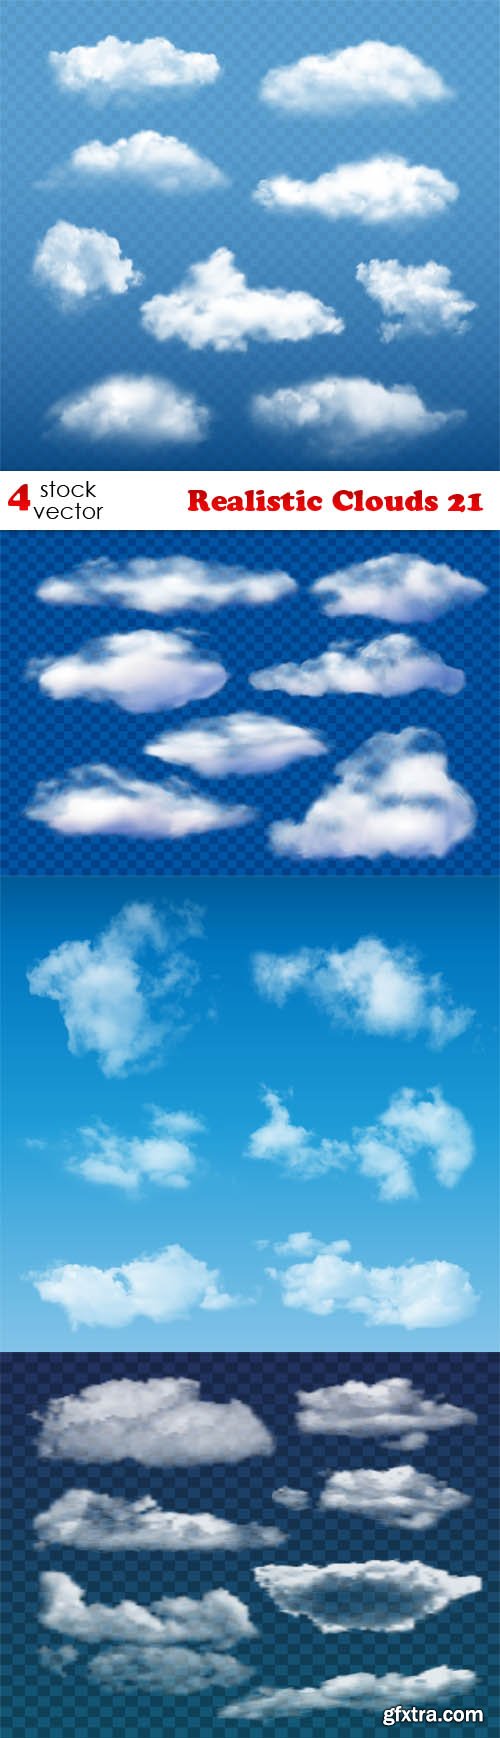 Vectors - Realistic Clouds 21